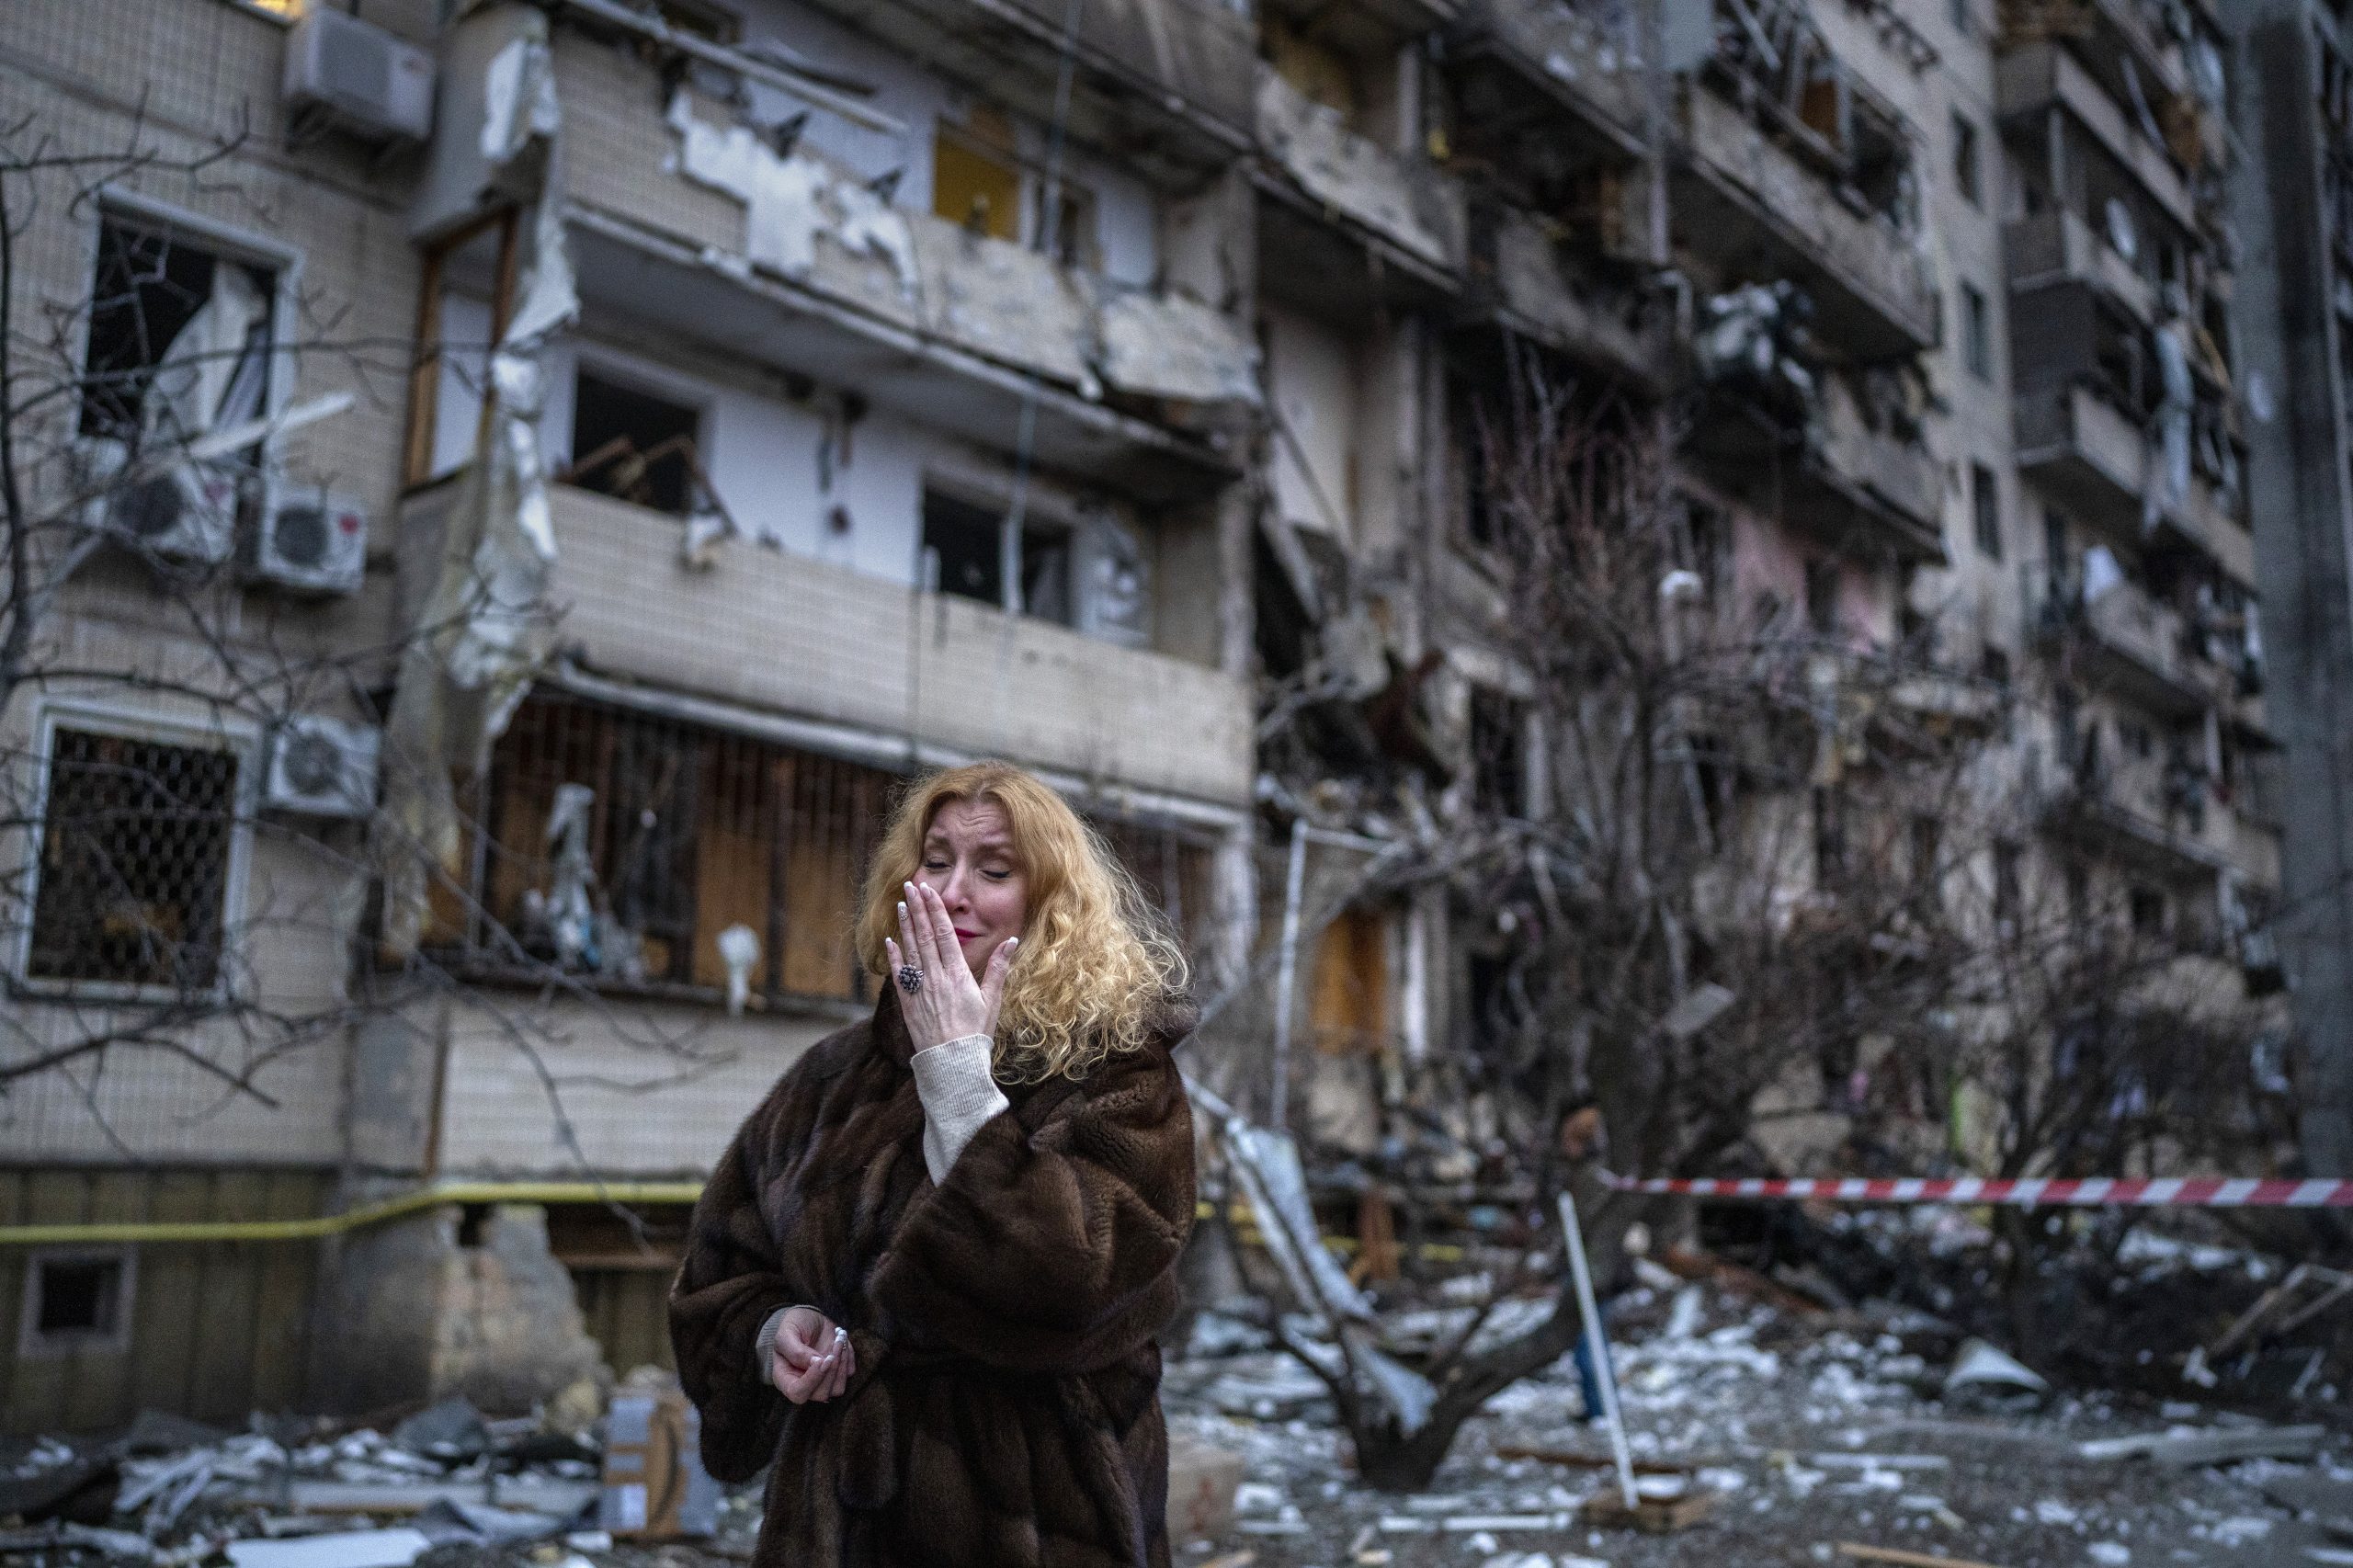 Natalija Sevrijukova pored zgrade u kojoj je živela u Kijevu FOTO: AP Photo/Emilio Morenatti